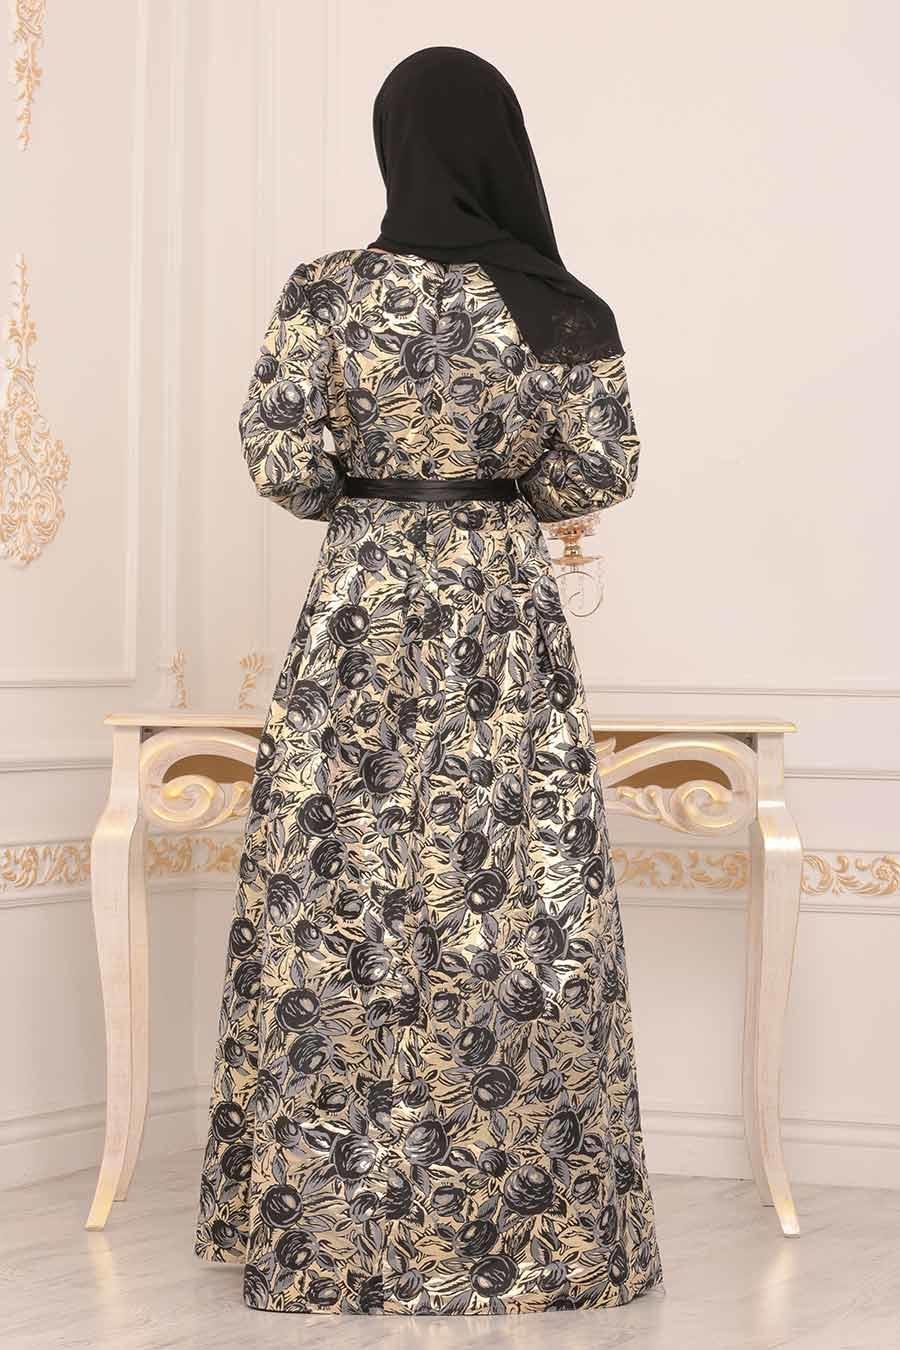 Nayla Collection - Desenli Siyah Jakarlı Tesettür Abiye Elbise 82453S